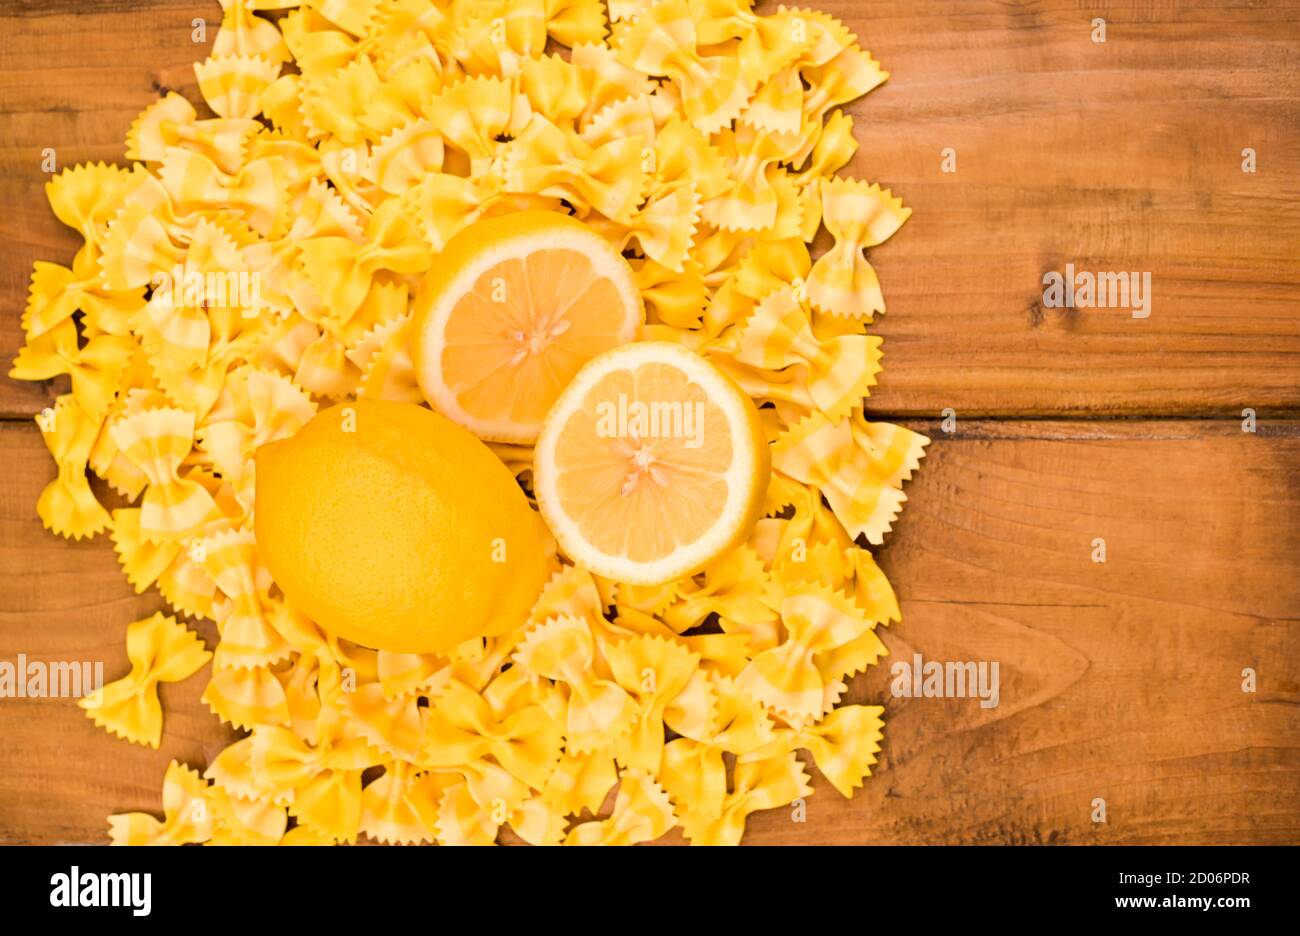 Pasta secca farfalle e limoni su sfondo ligneo. Pasta colorata, cucina tipica italiana del sud. Vista dall'alto. Foto di alta qualità. Spazio libero per il testo Foto Stock